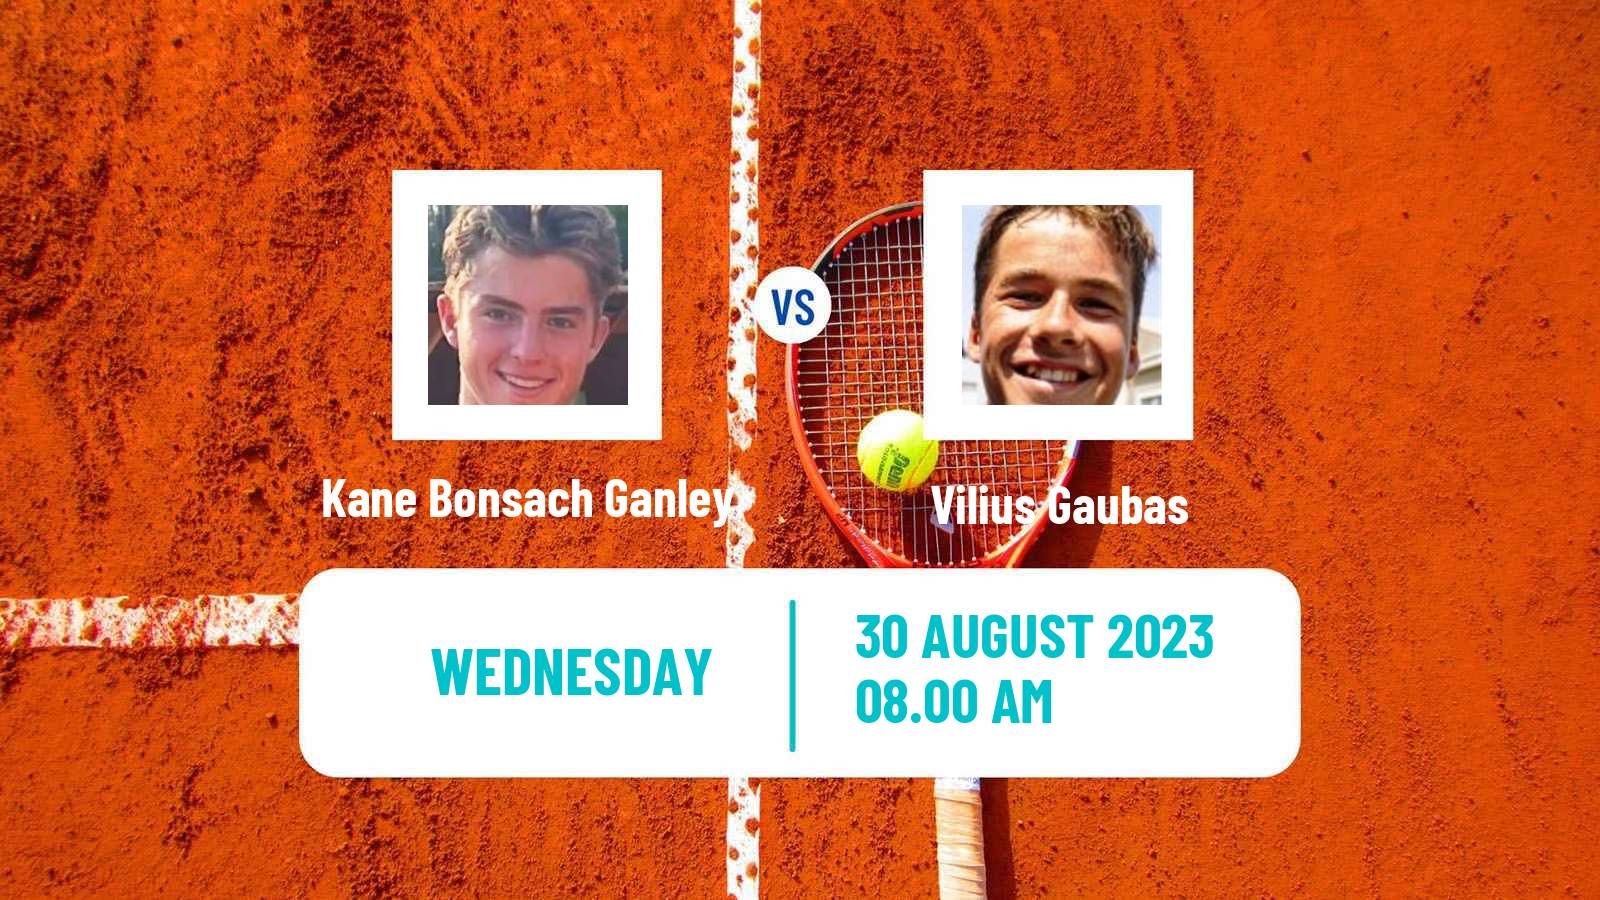 Tennis ITF M25 Oviedo Men Kane Bonsach Ganley - Vilius Gaubas